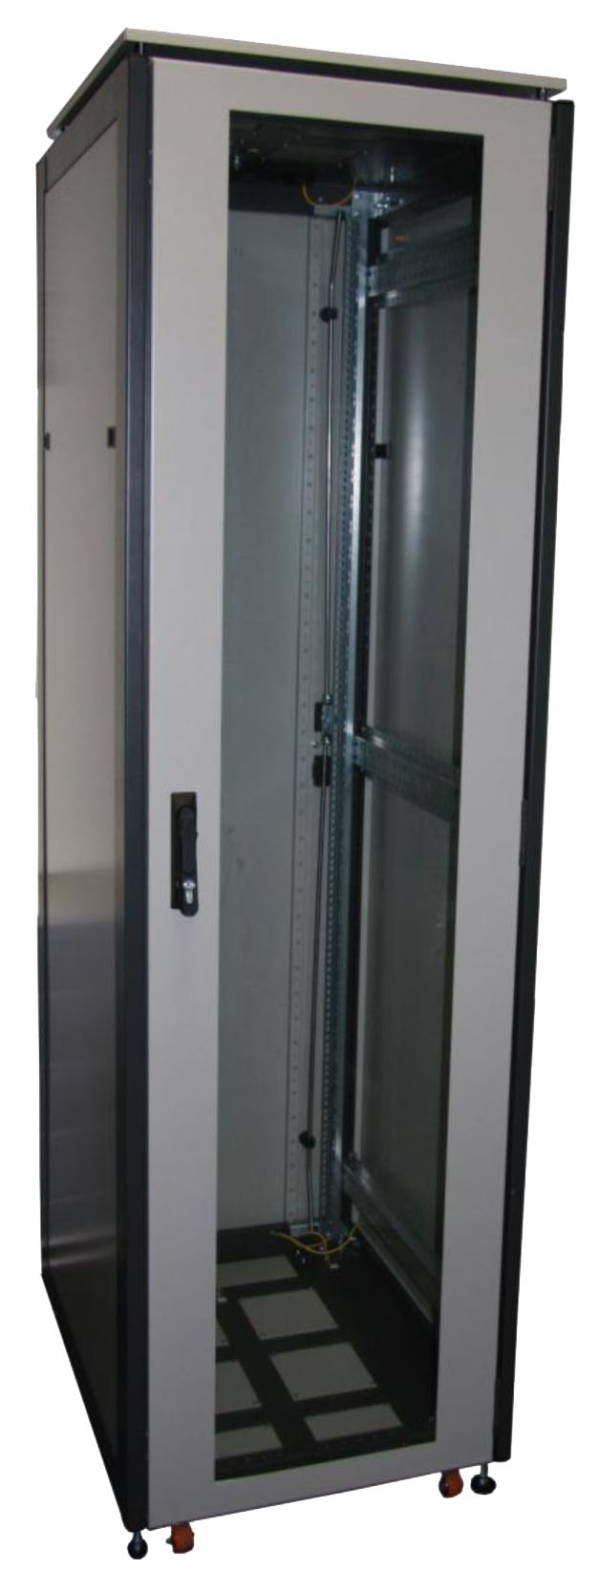 ССКТБ ТОМАСС ШТК-6812Э-04 - шкаф телекоммуникационный 19", 24U, 600х800х1200 мм, с двумя металлическими дверьми